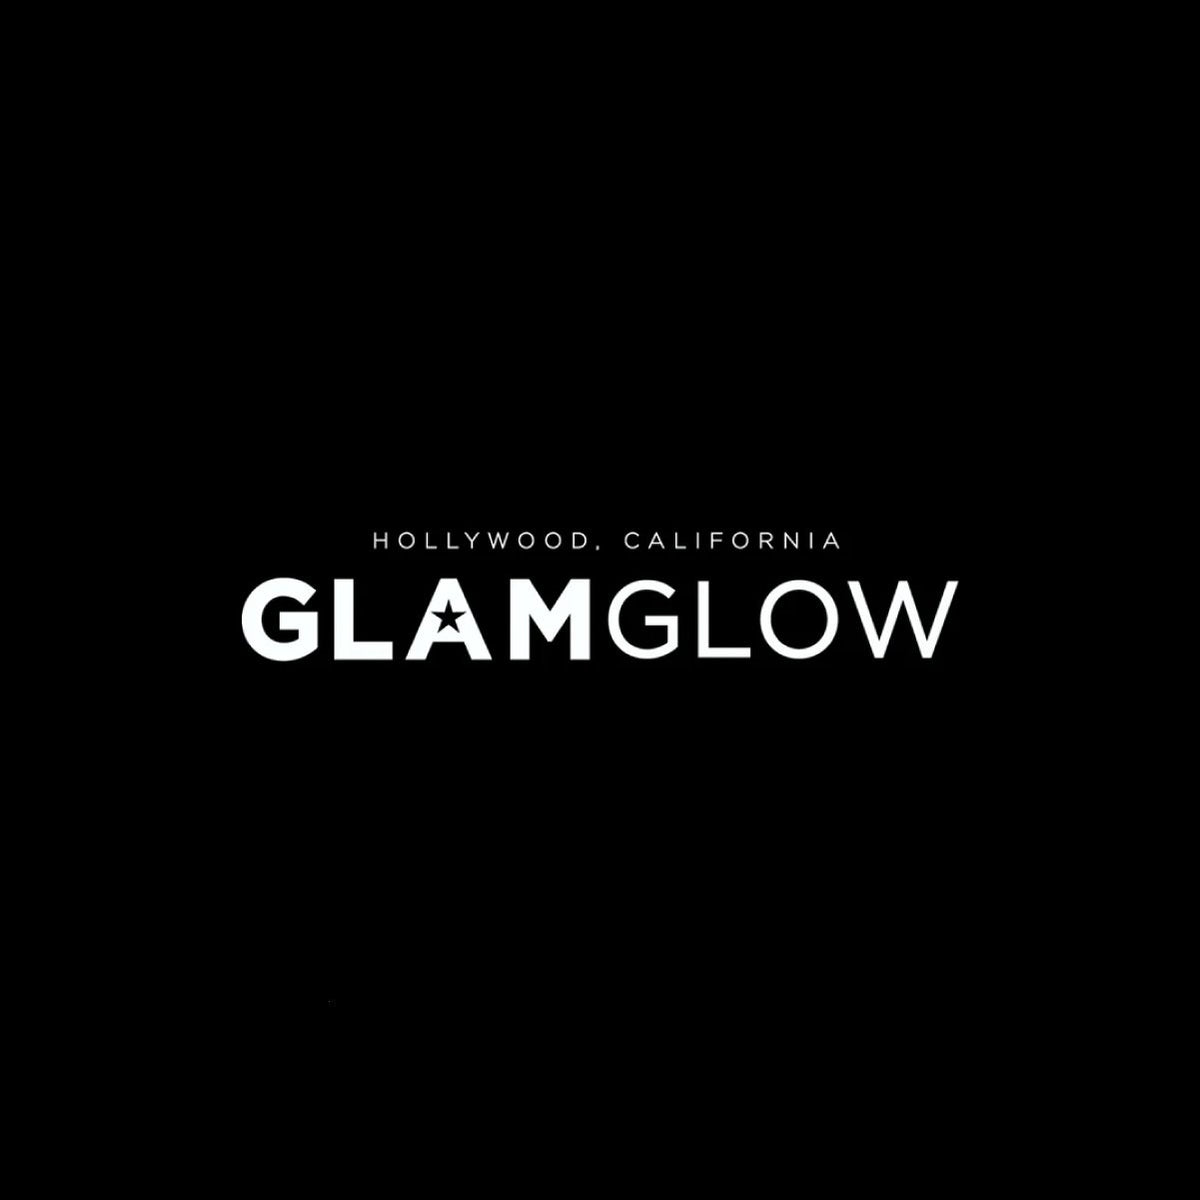 Glamglow גלאם גלואו